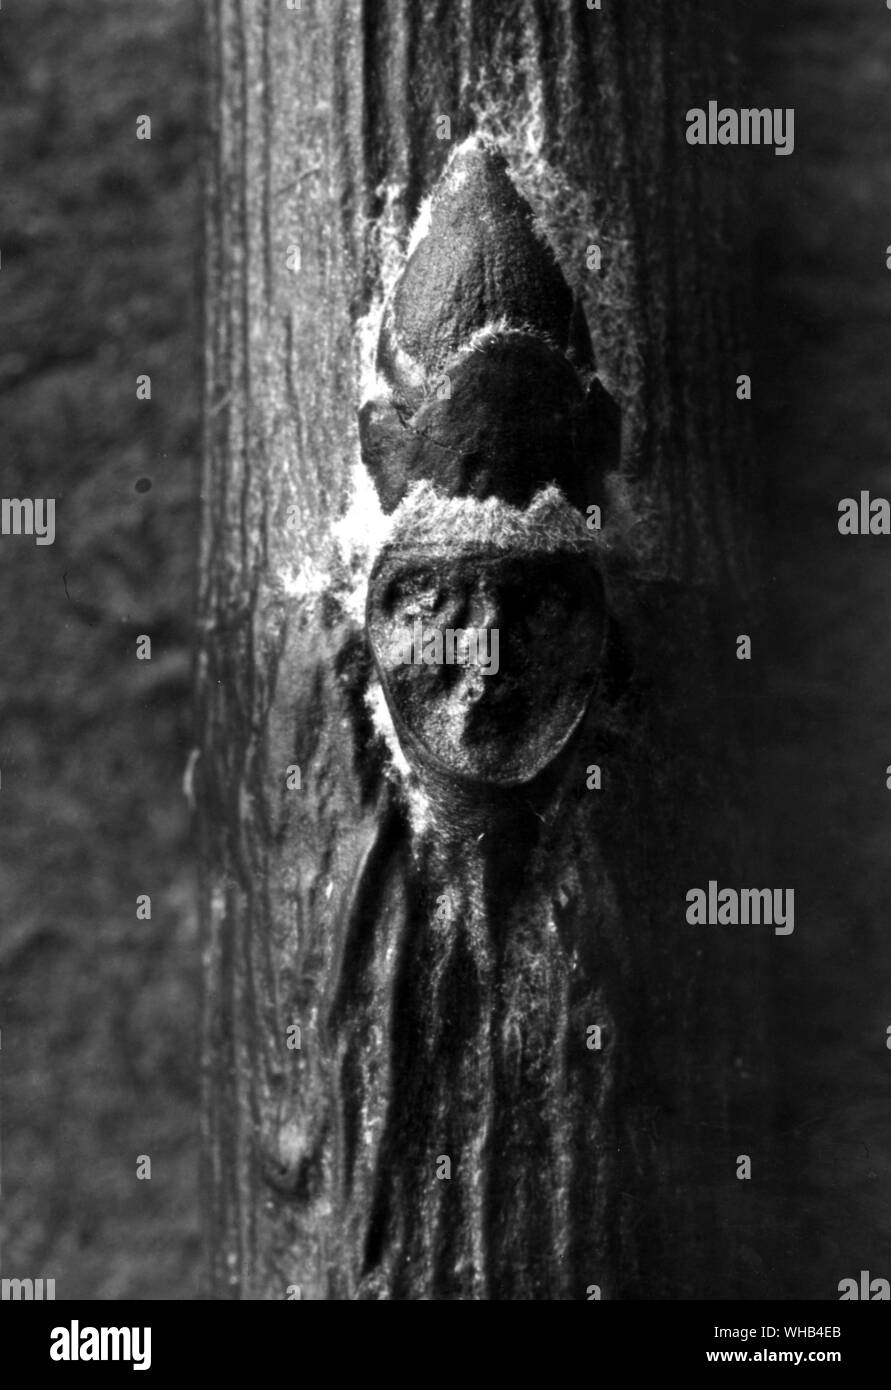 Strega cicatrix - una sorta di avvolto su un albero che nella guarigione ha preso la forma di una strega.. Foto Stock